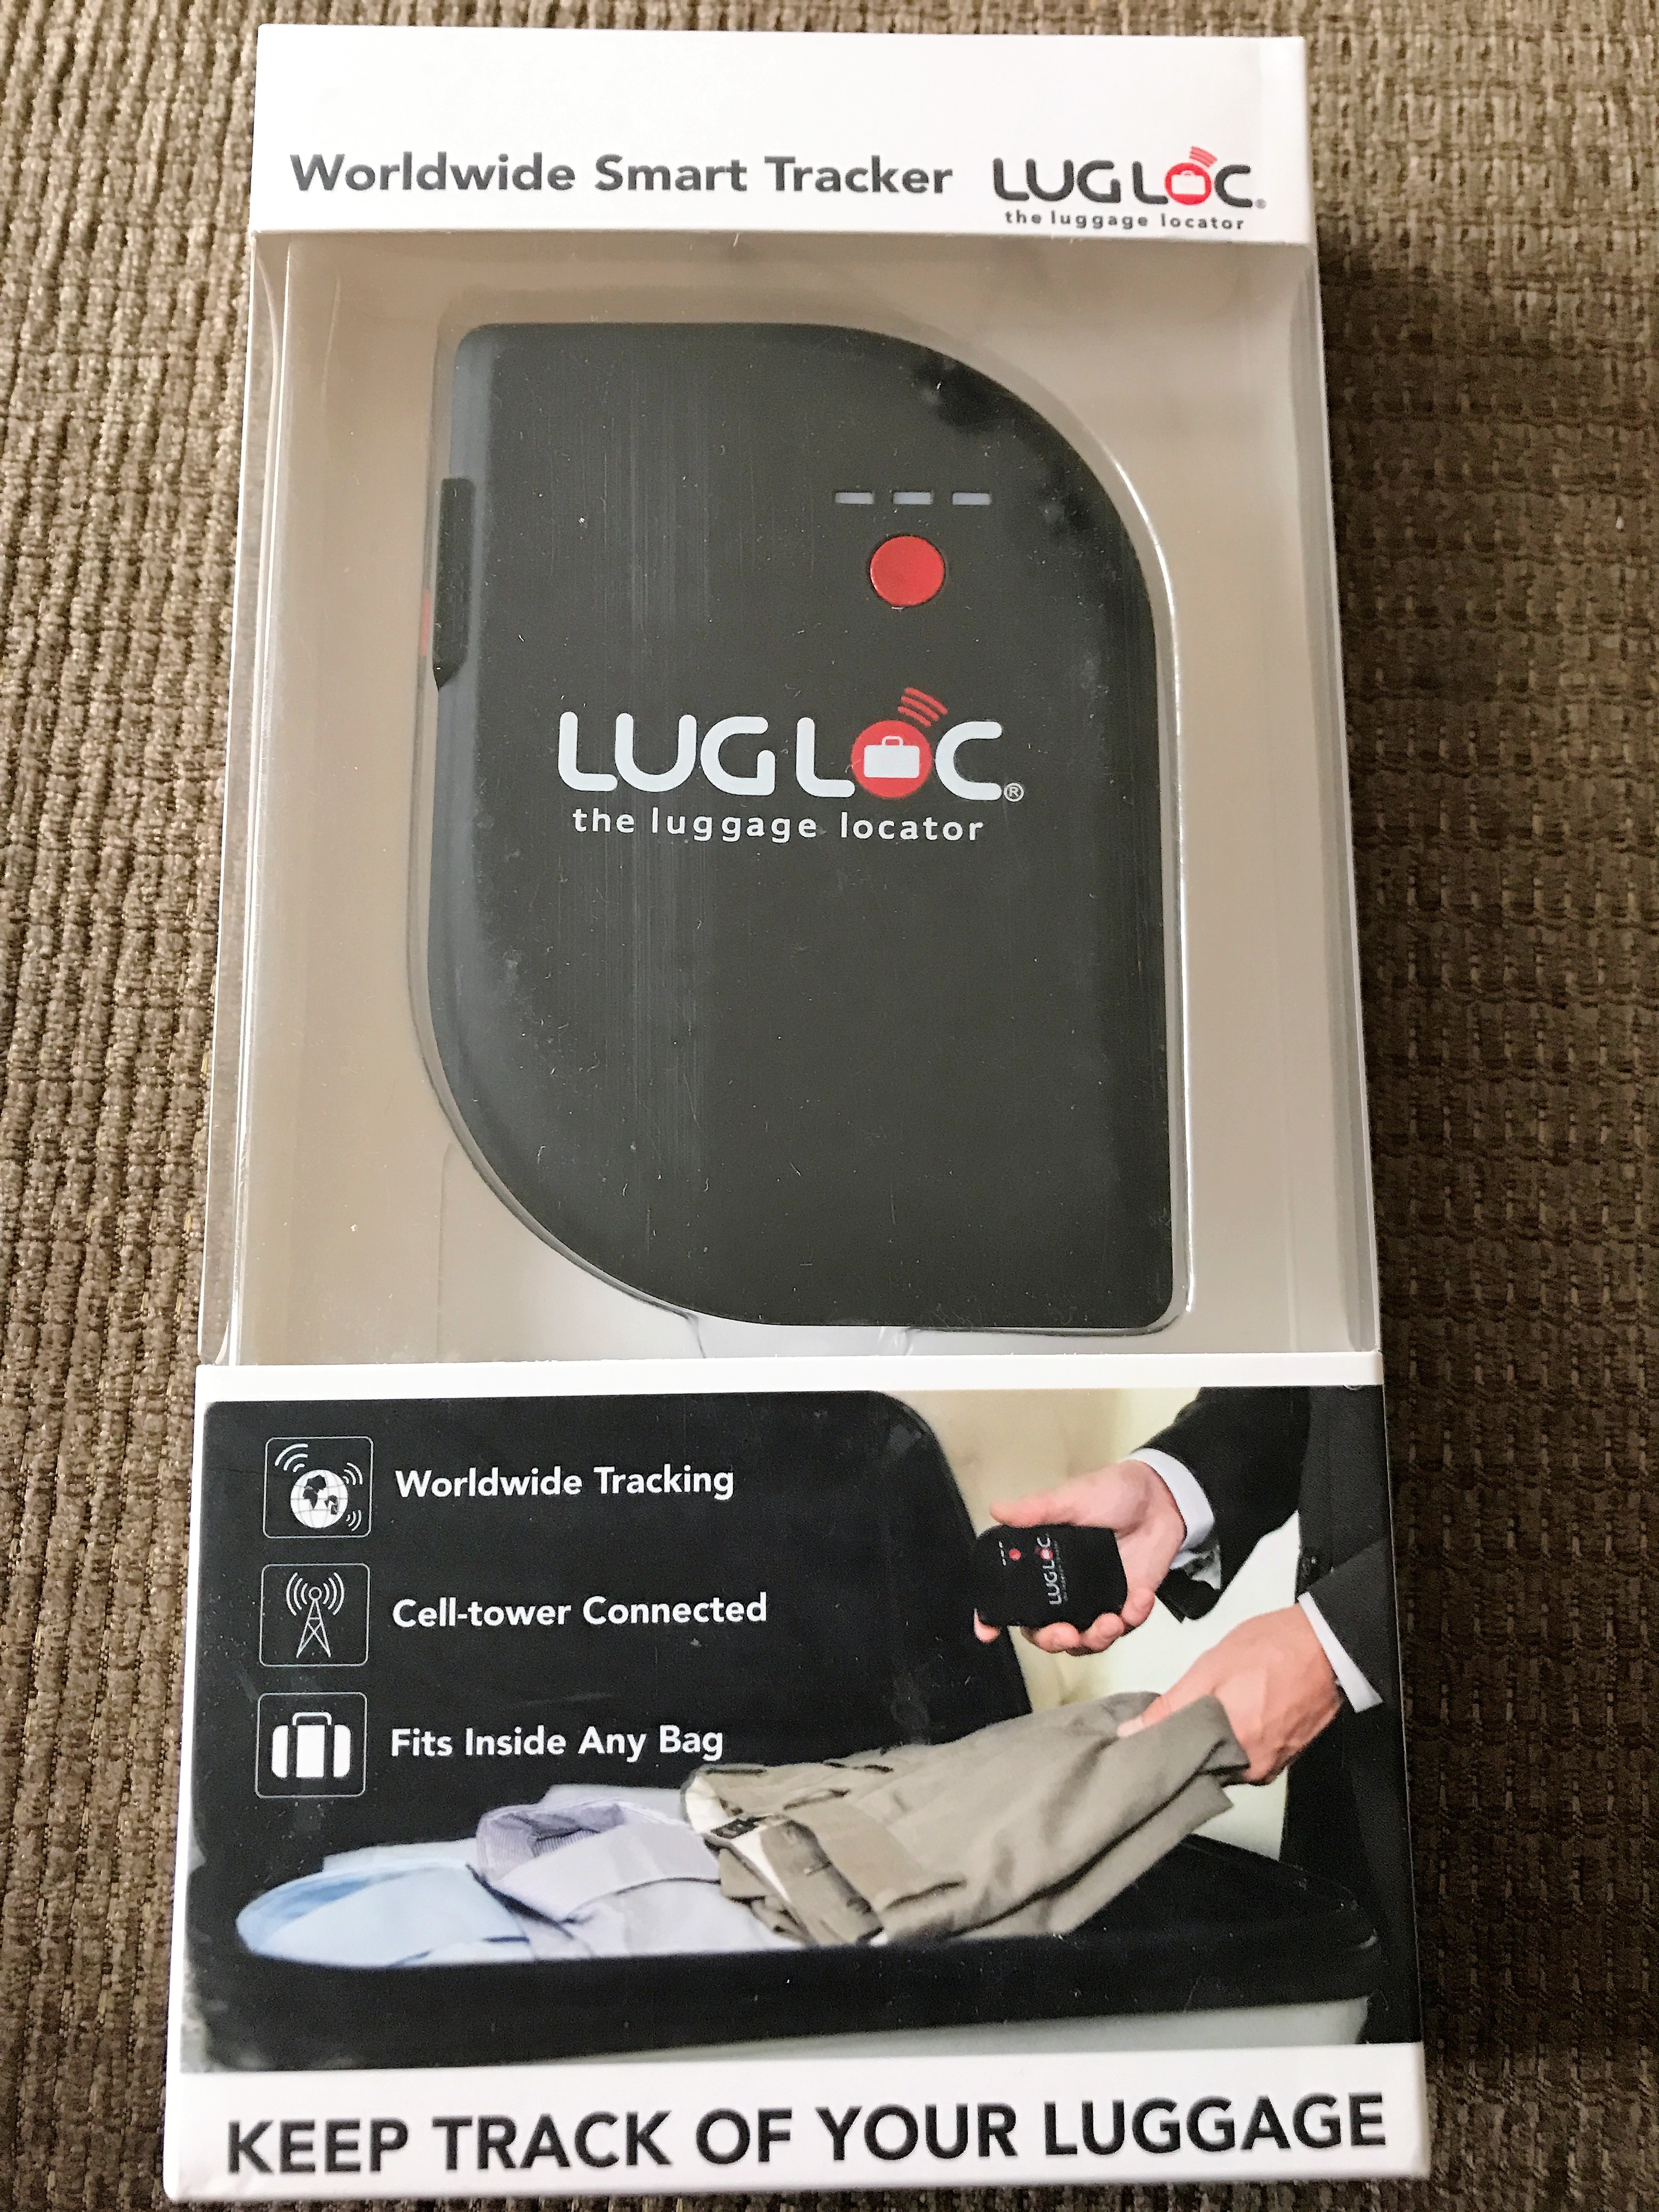 LugLoc review